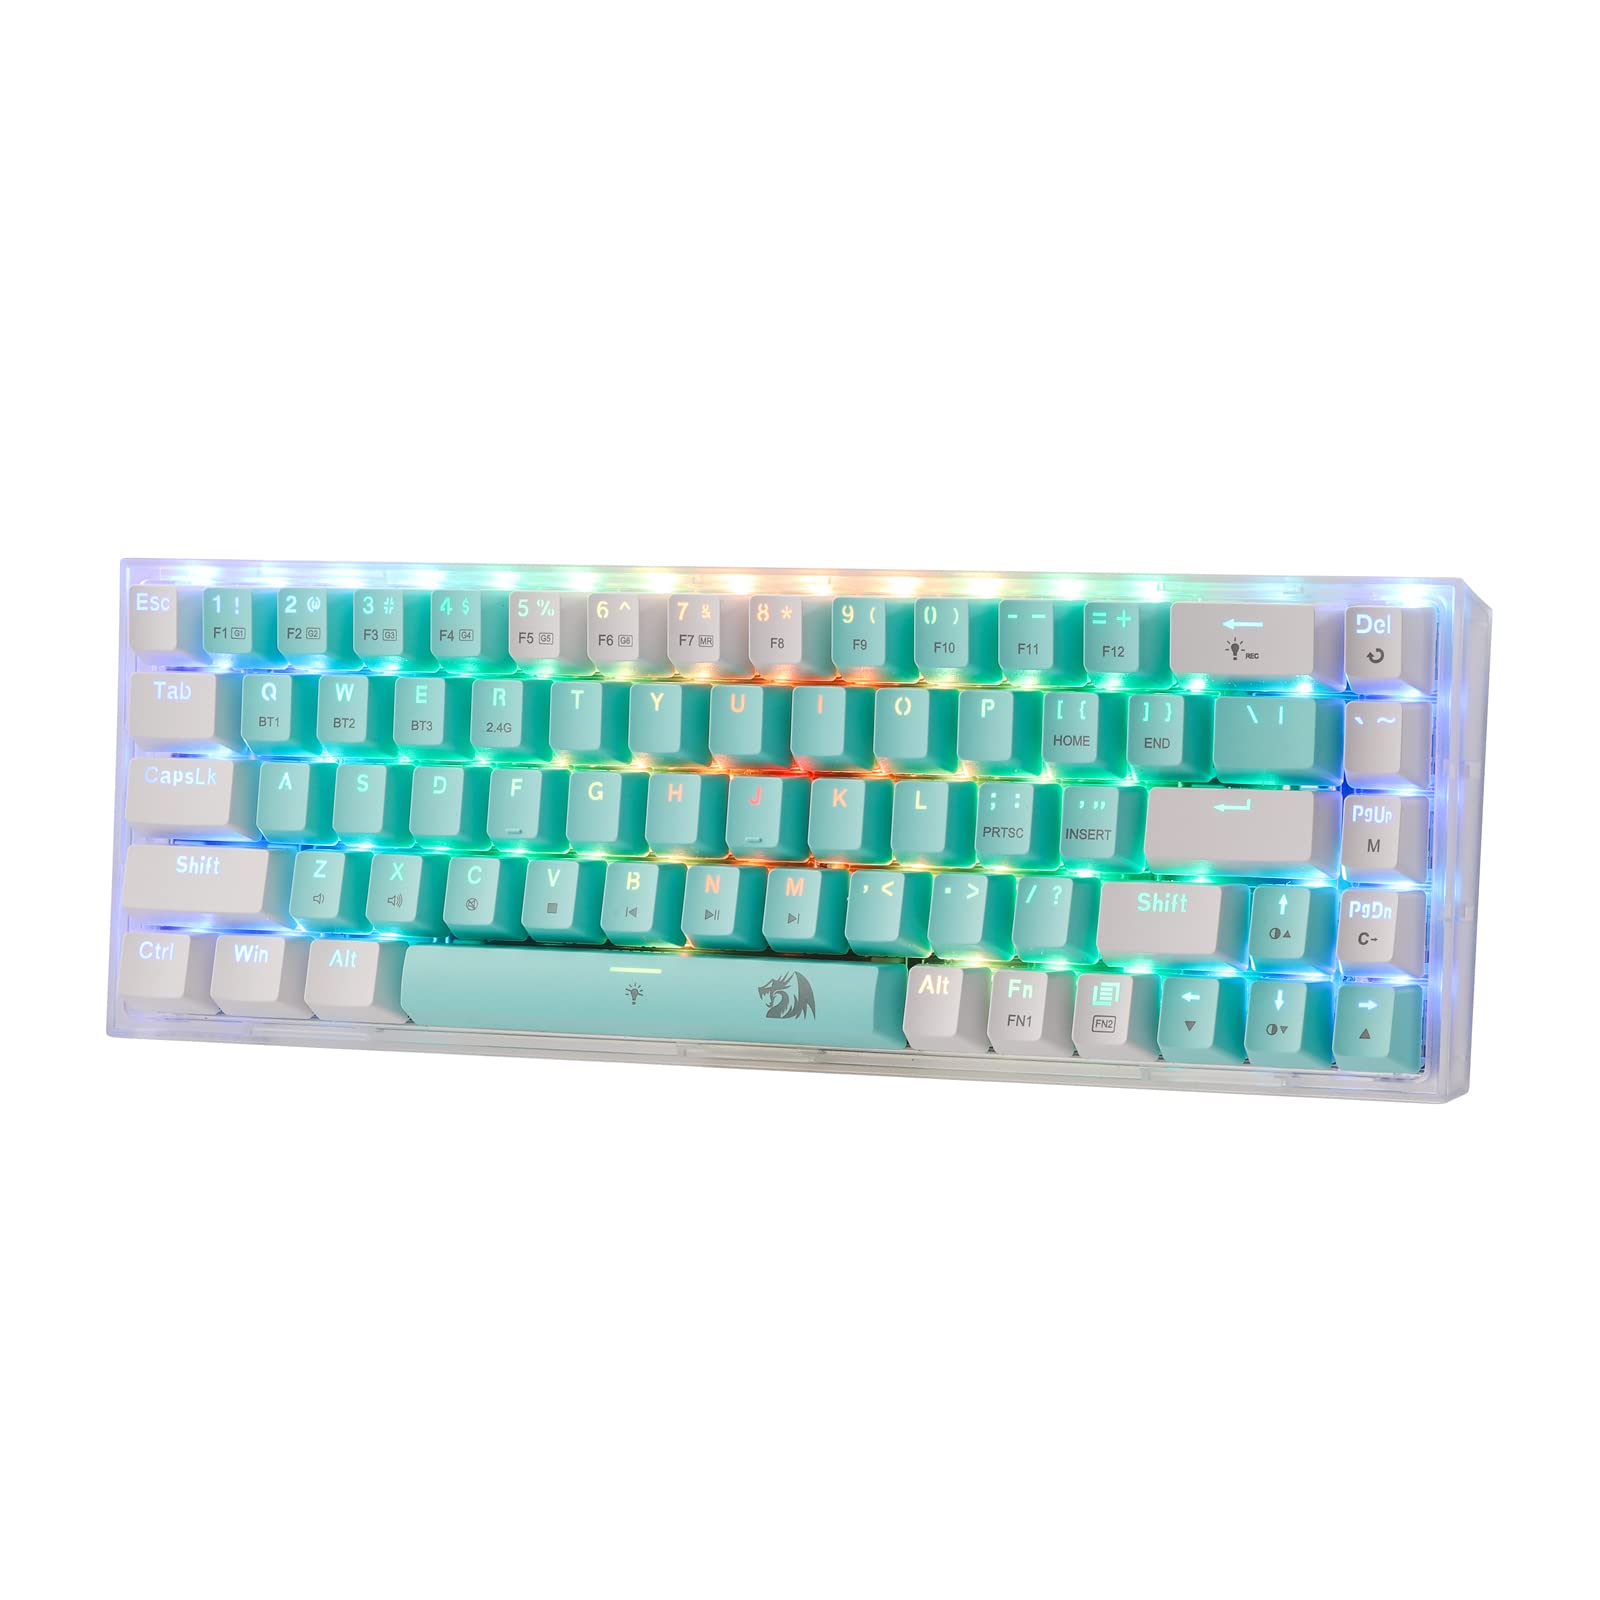 Redragon K631 PRO WT 65% 3-Modus-RGB-Gaming-Tastatur, 68 Tasten, Hot-Swap-fähige, kompakte mechanische Tastatur mit Hot-Swap-Free-Mod-PCB-Sockel und durchscheinender Platine, linearer Schalter